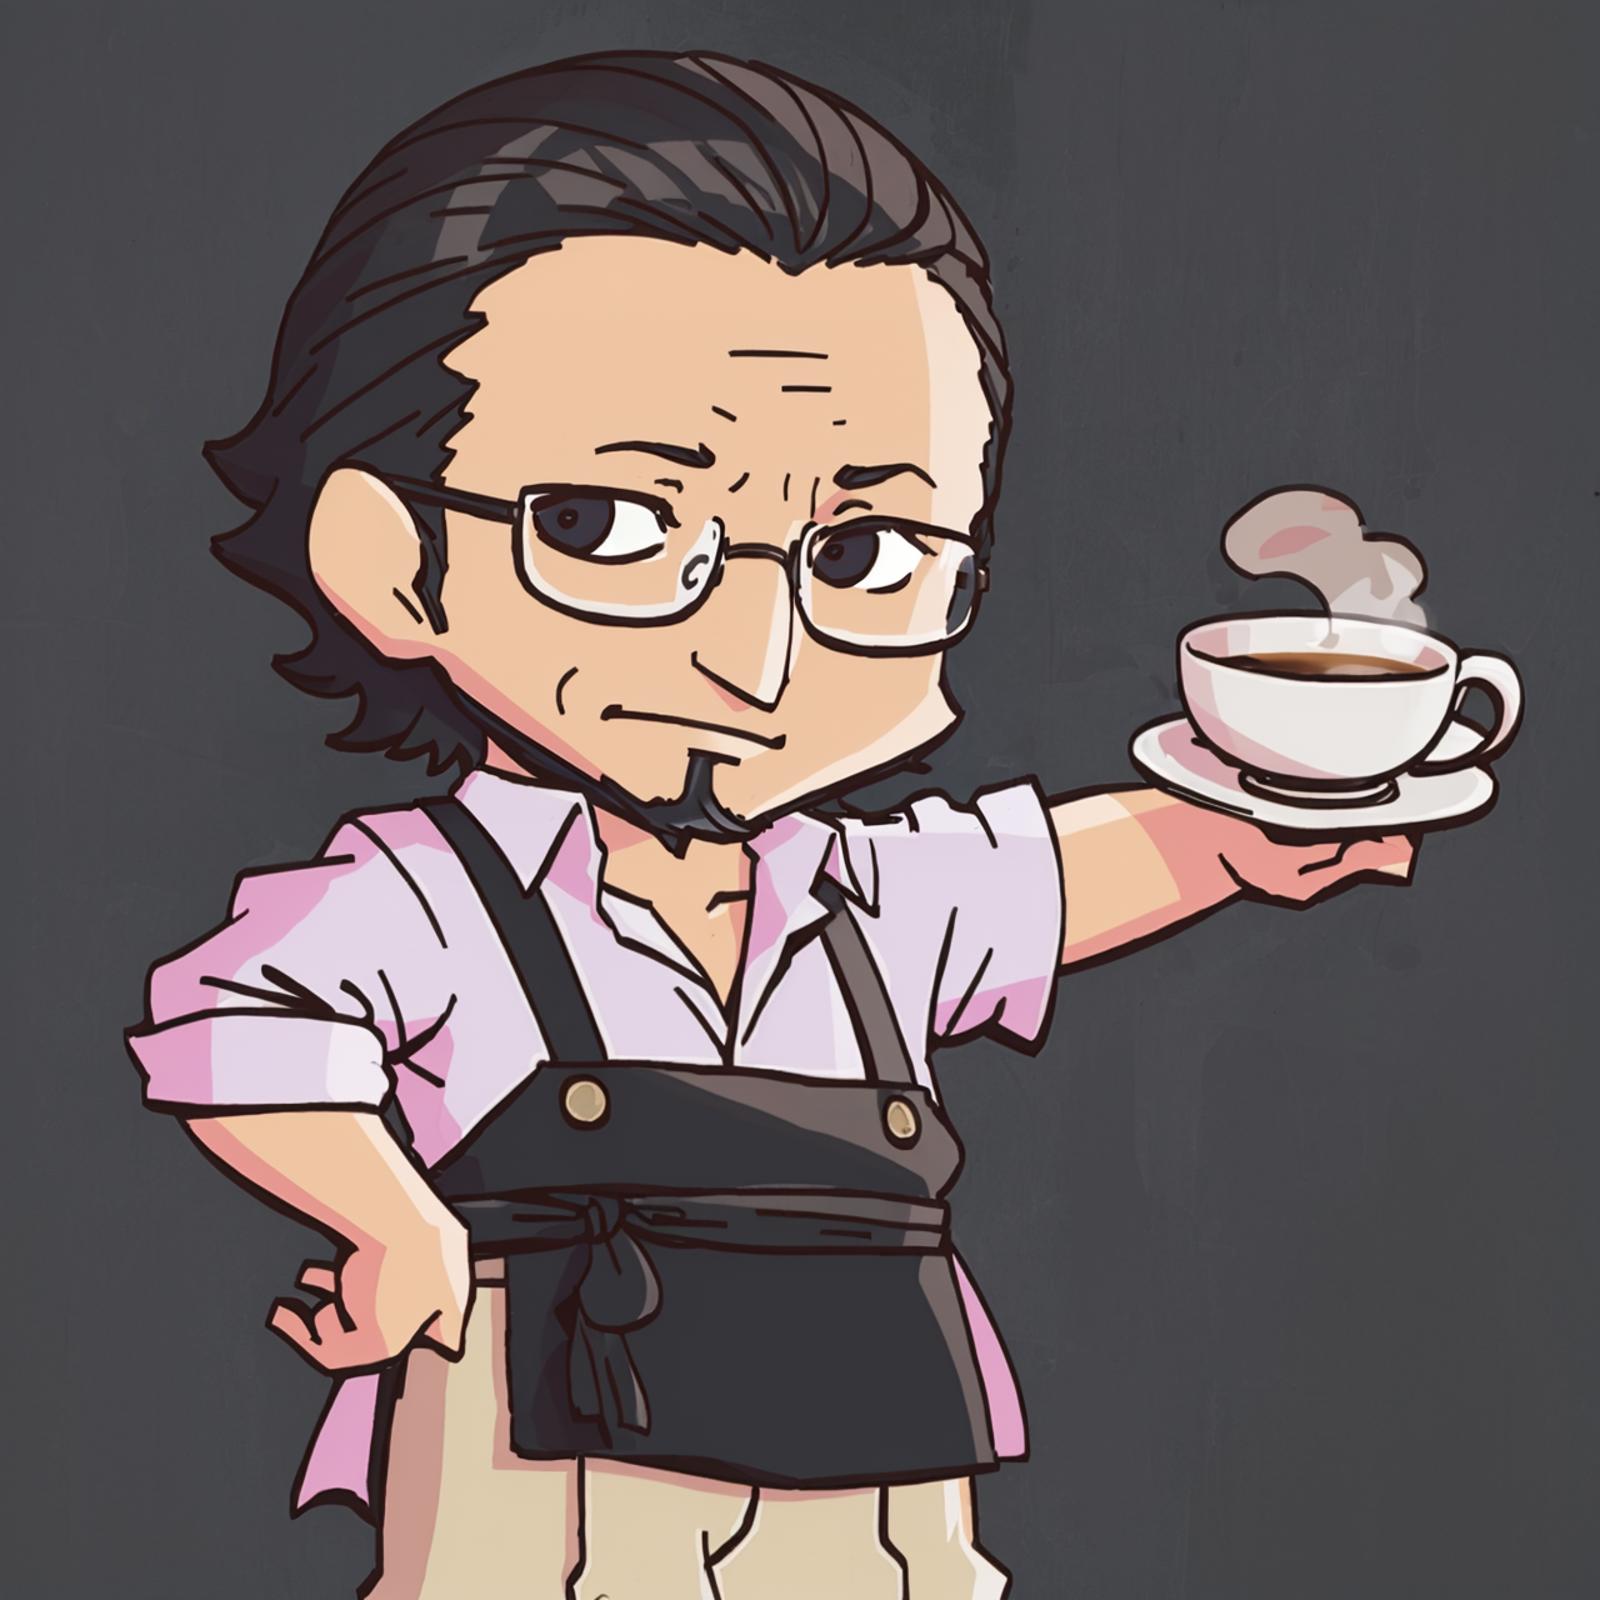 Sojiro Sakura (Persona 5) image by FP_plus